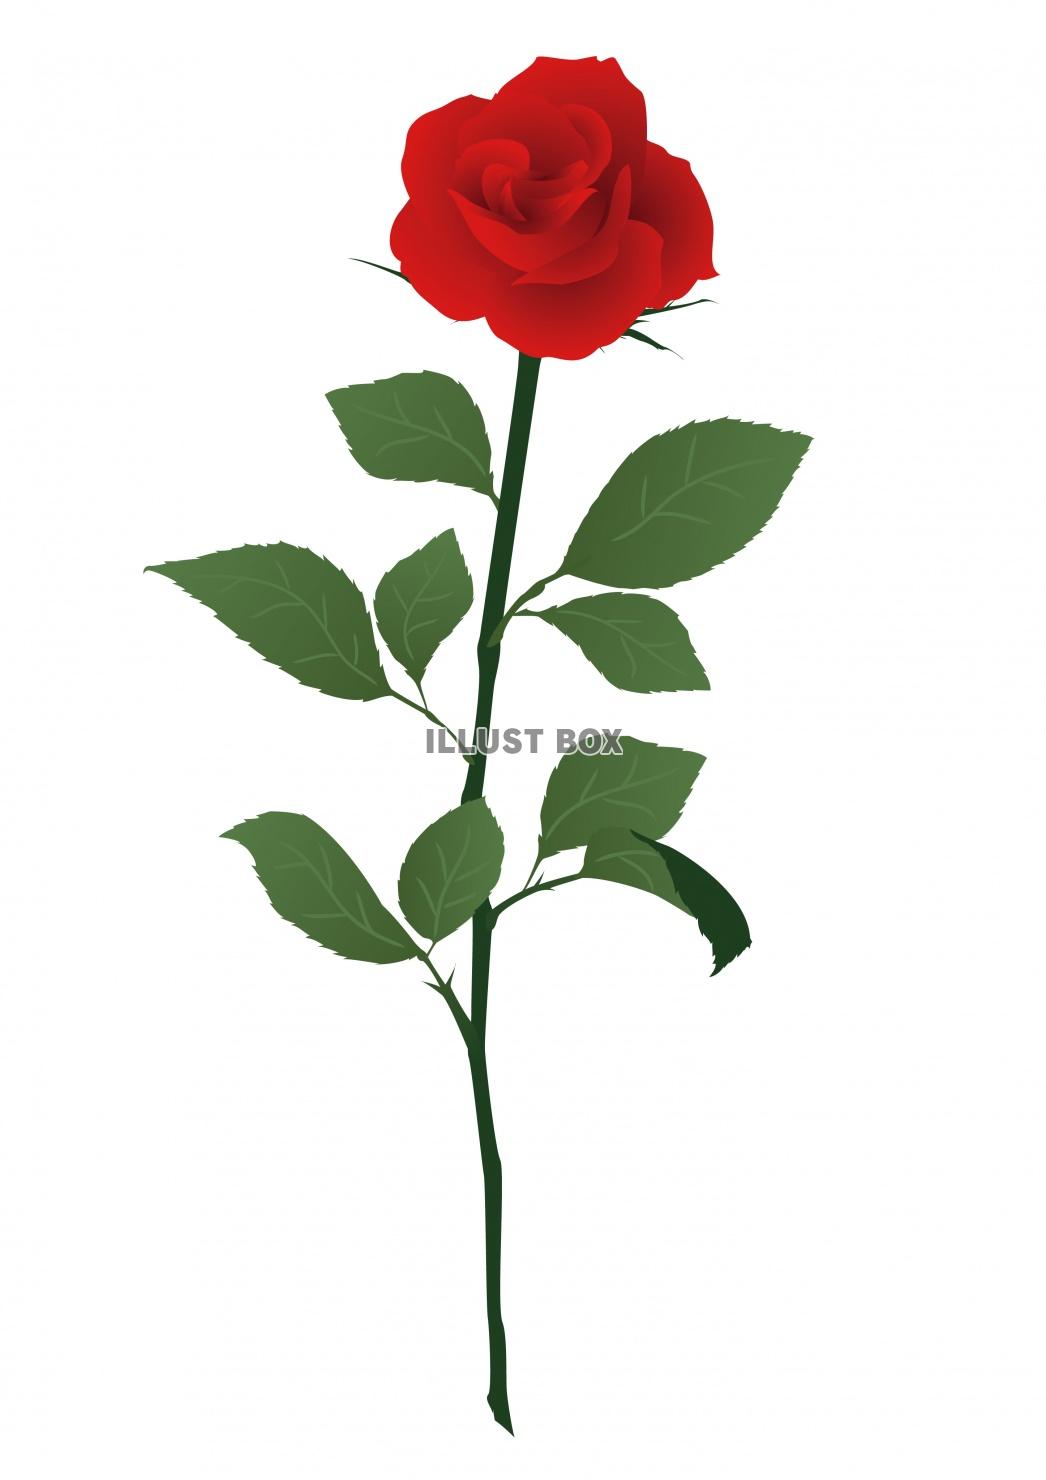 一輪の赤いバラの花イラスト